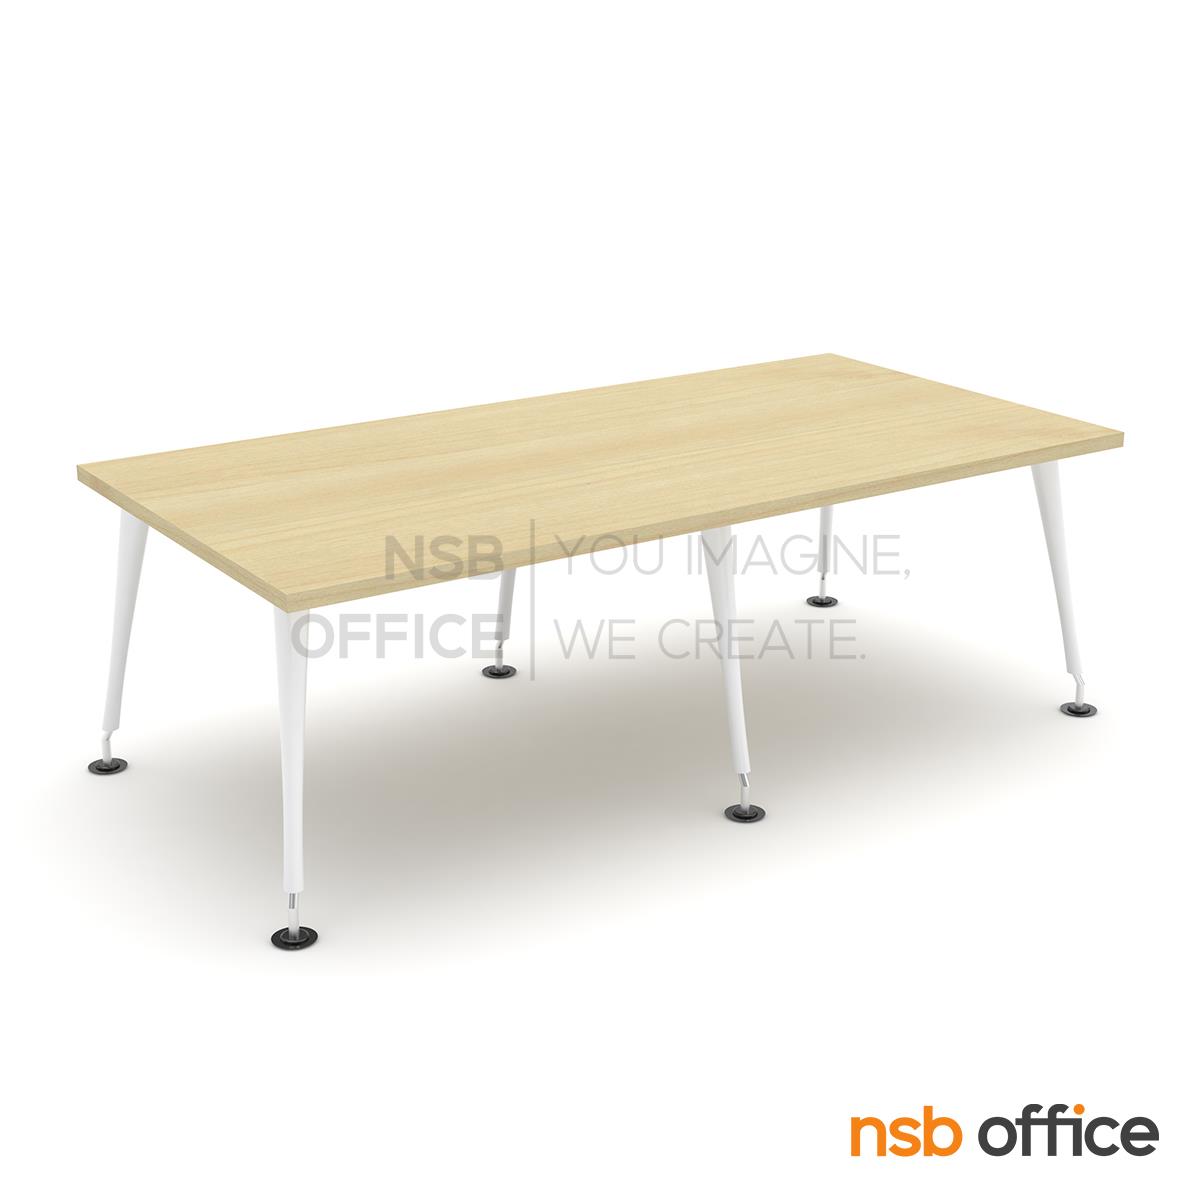 โต๊ะประชุมทรงสี่เหลี่ยม  รุ่น Maroon (มาร์รูน) ขนาด 240W*120D cm. ขาเหล็ก